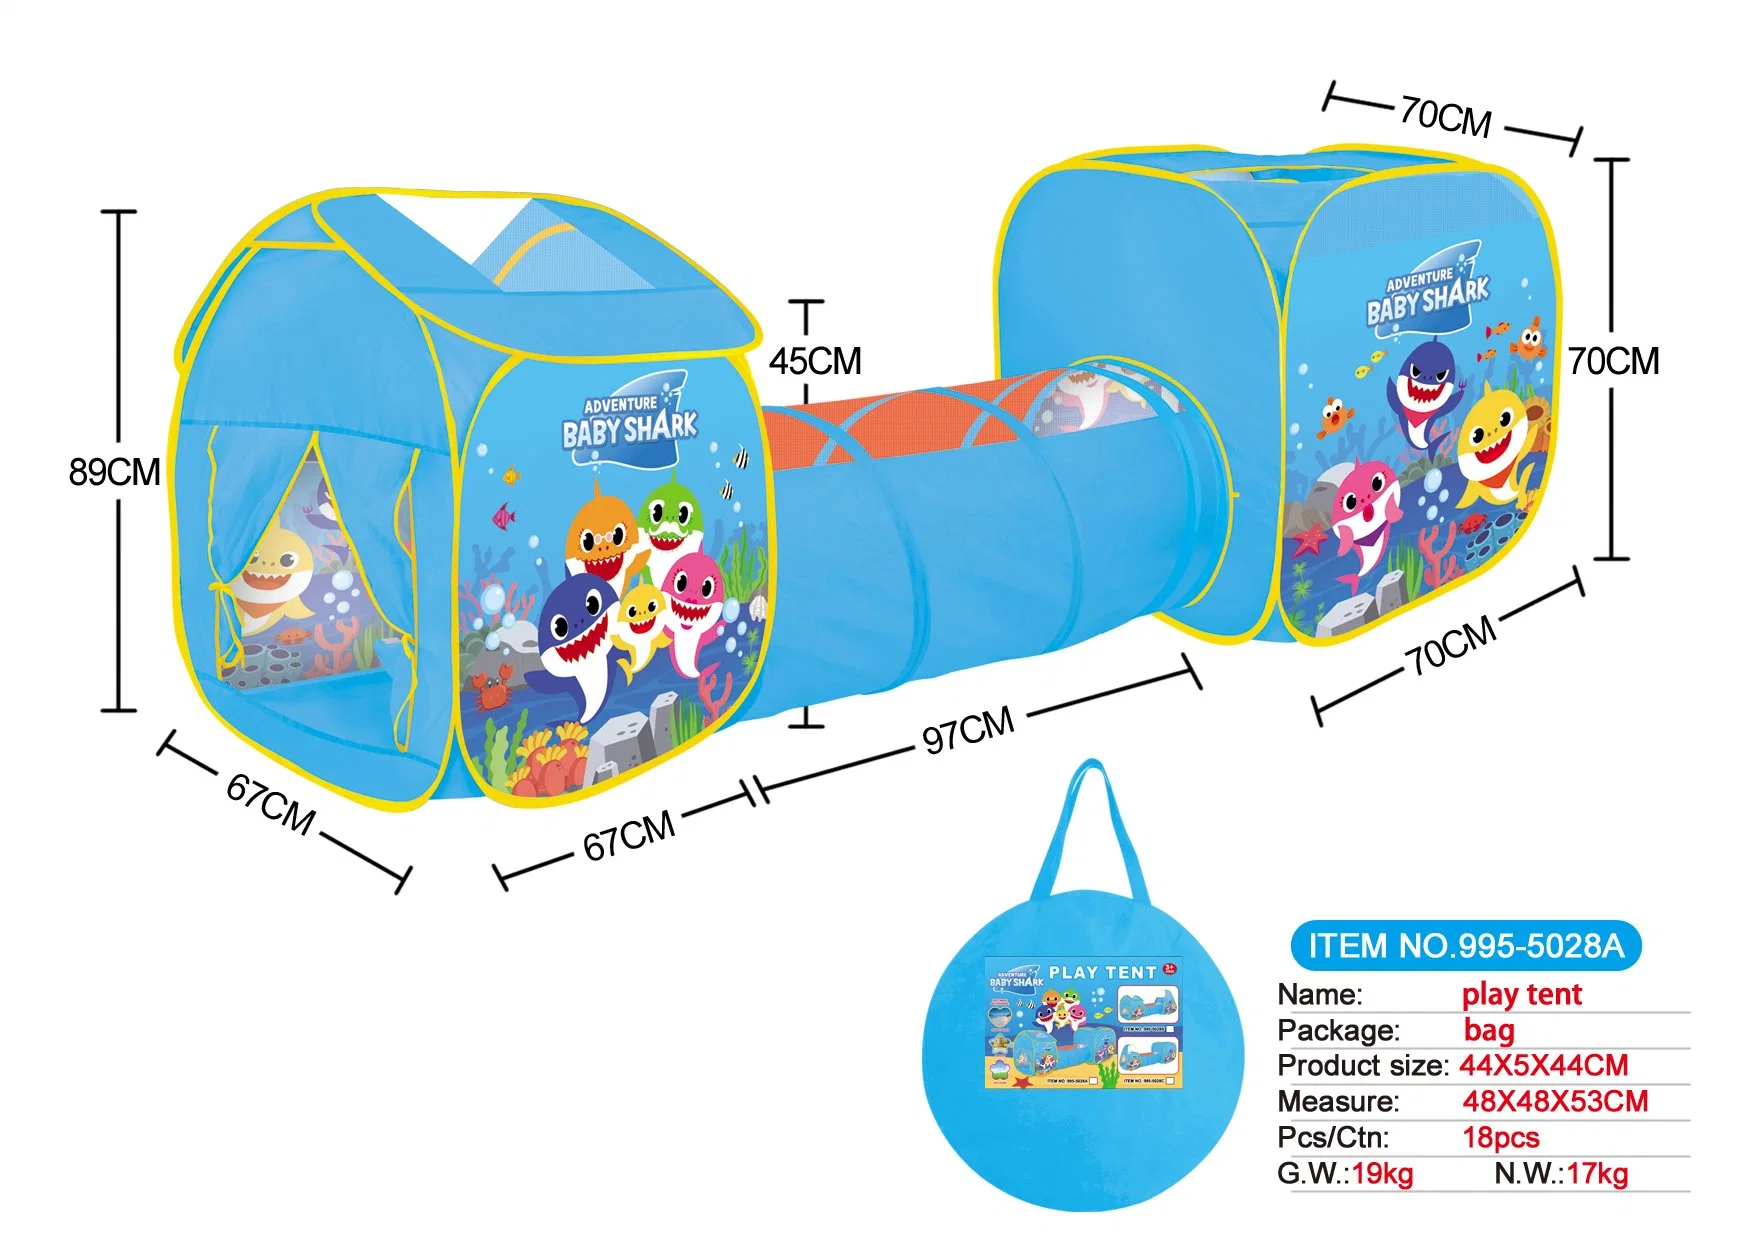 Casa personalizada de Parque Exterior com Tunnel Ball 3 em 1 Kids Play tendas fácil de configurar Multicolor Children Playhouse para Tenda do bebé